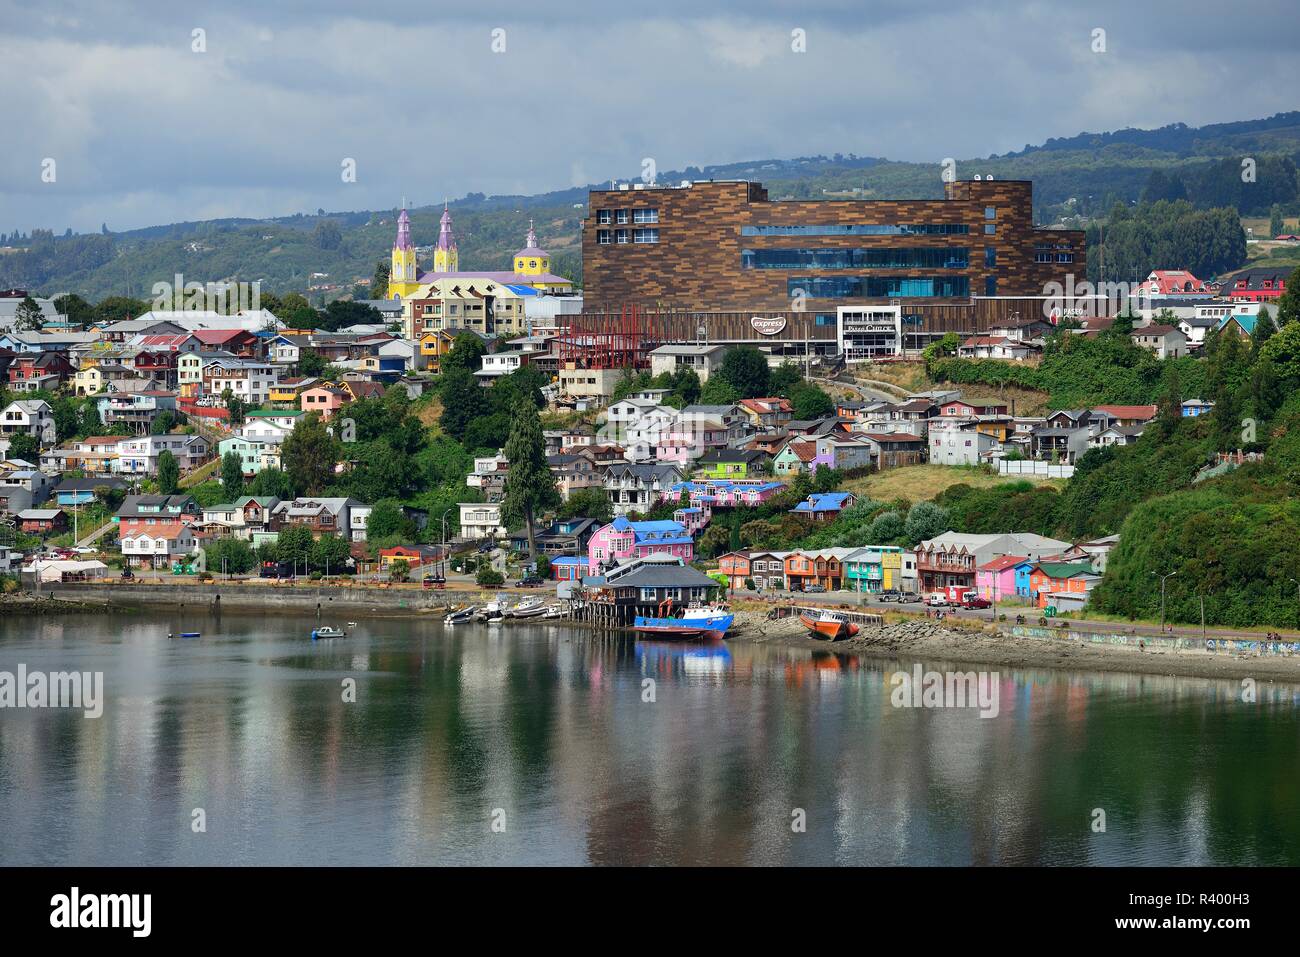 Vista de la ciudad con centro comercial Paseo Chiloé, Castro, isla de Chiloé, Chile Foto de stock